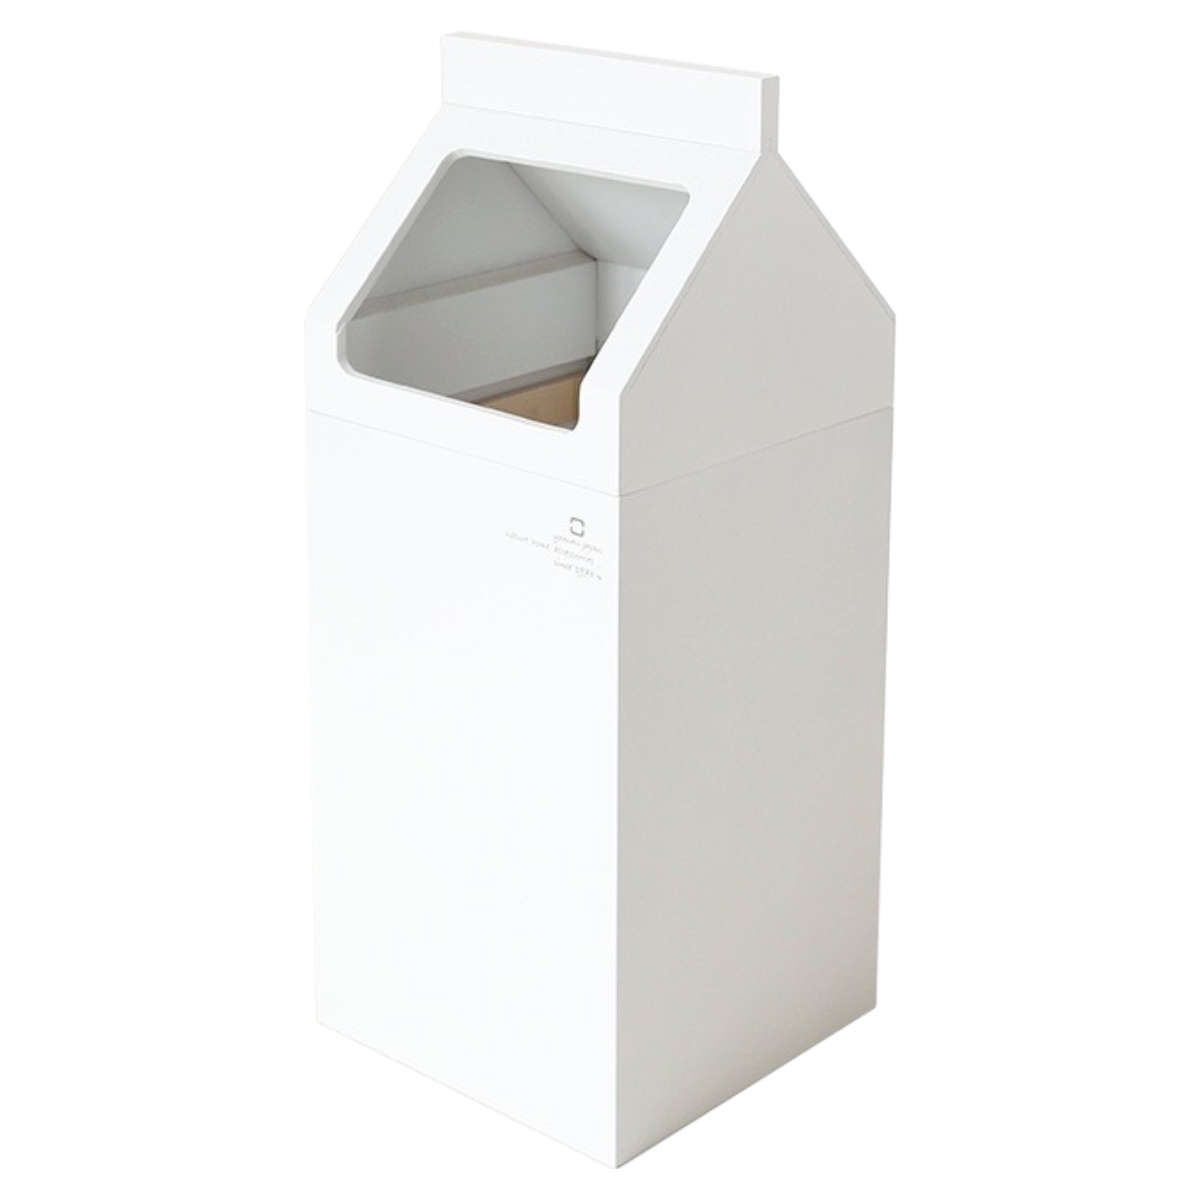 木製 ごみ箱 7.8Lミルドットシー 外からゴミ袋が見えにくい 内枠付き 幅18cm 高さ45cm ホワイト YK22-102 日本製 ヤマト工芸 yamato ゴミ箱 ダストボックス